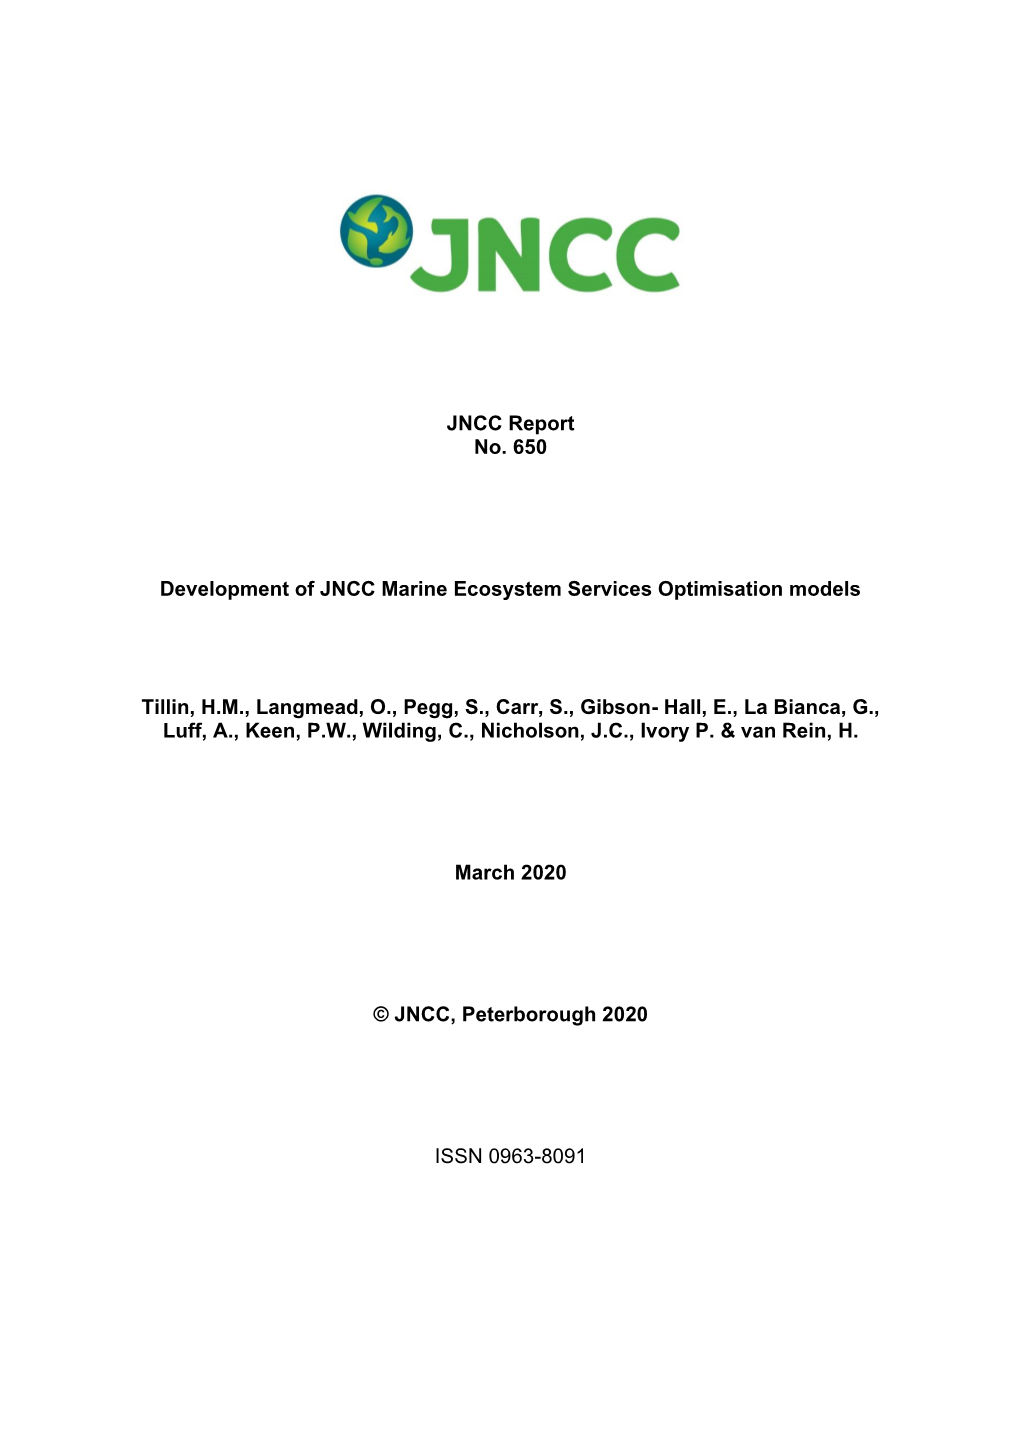 JNCC Report No. 650